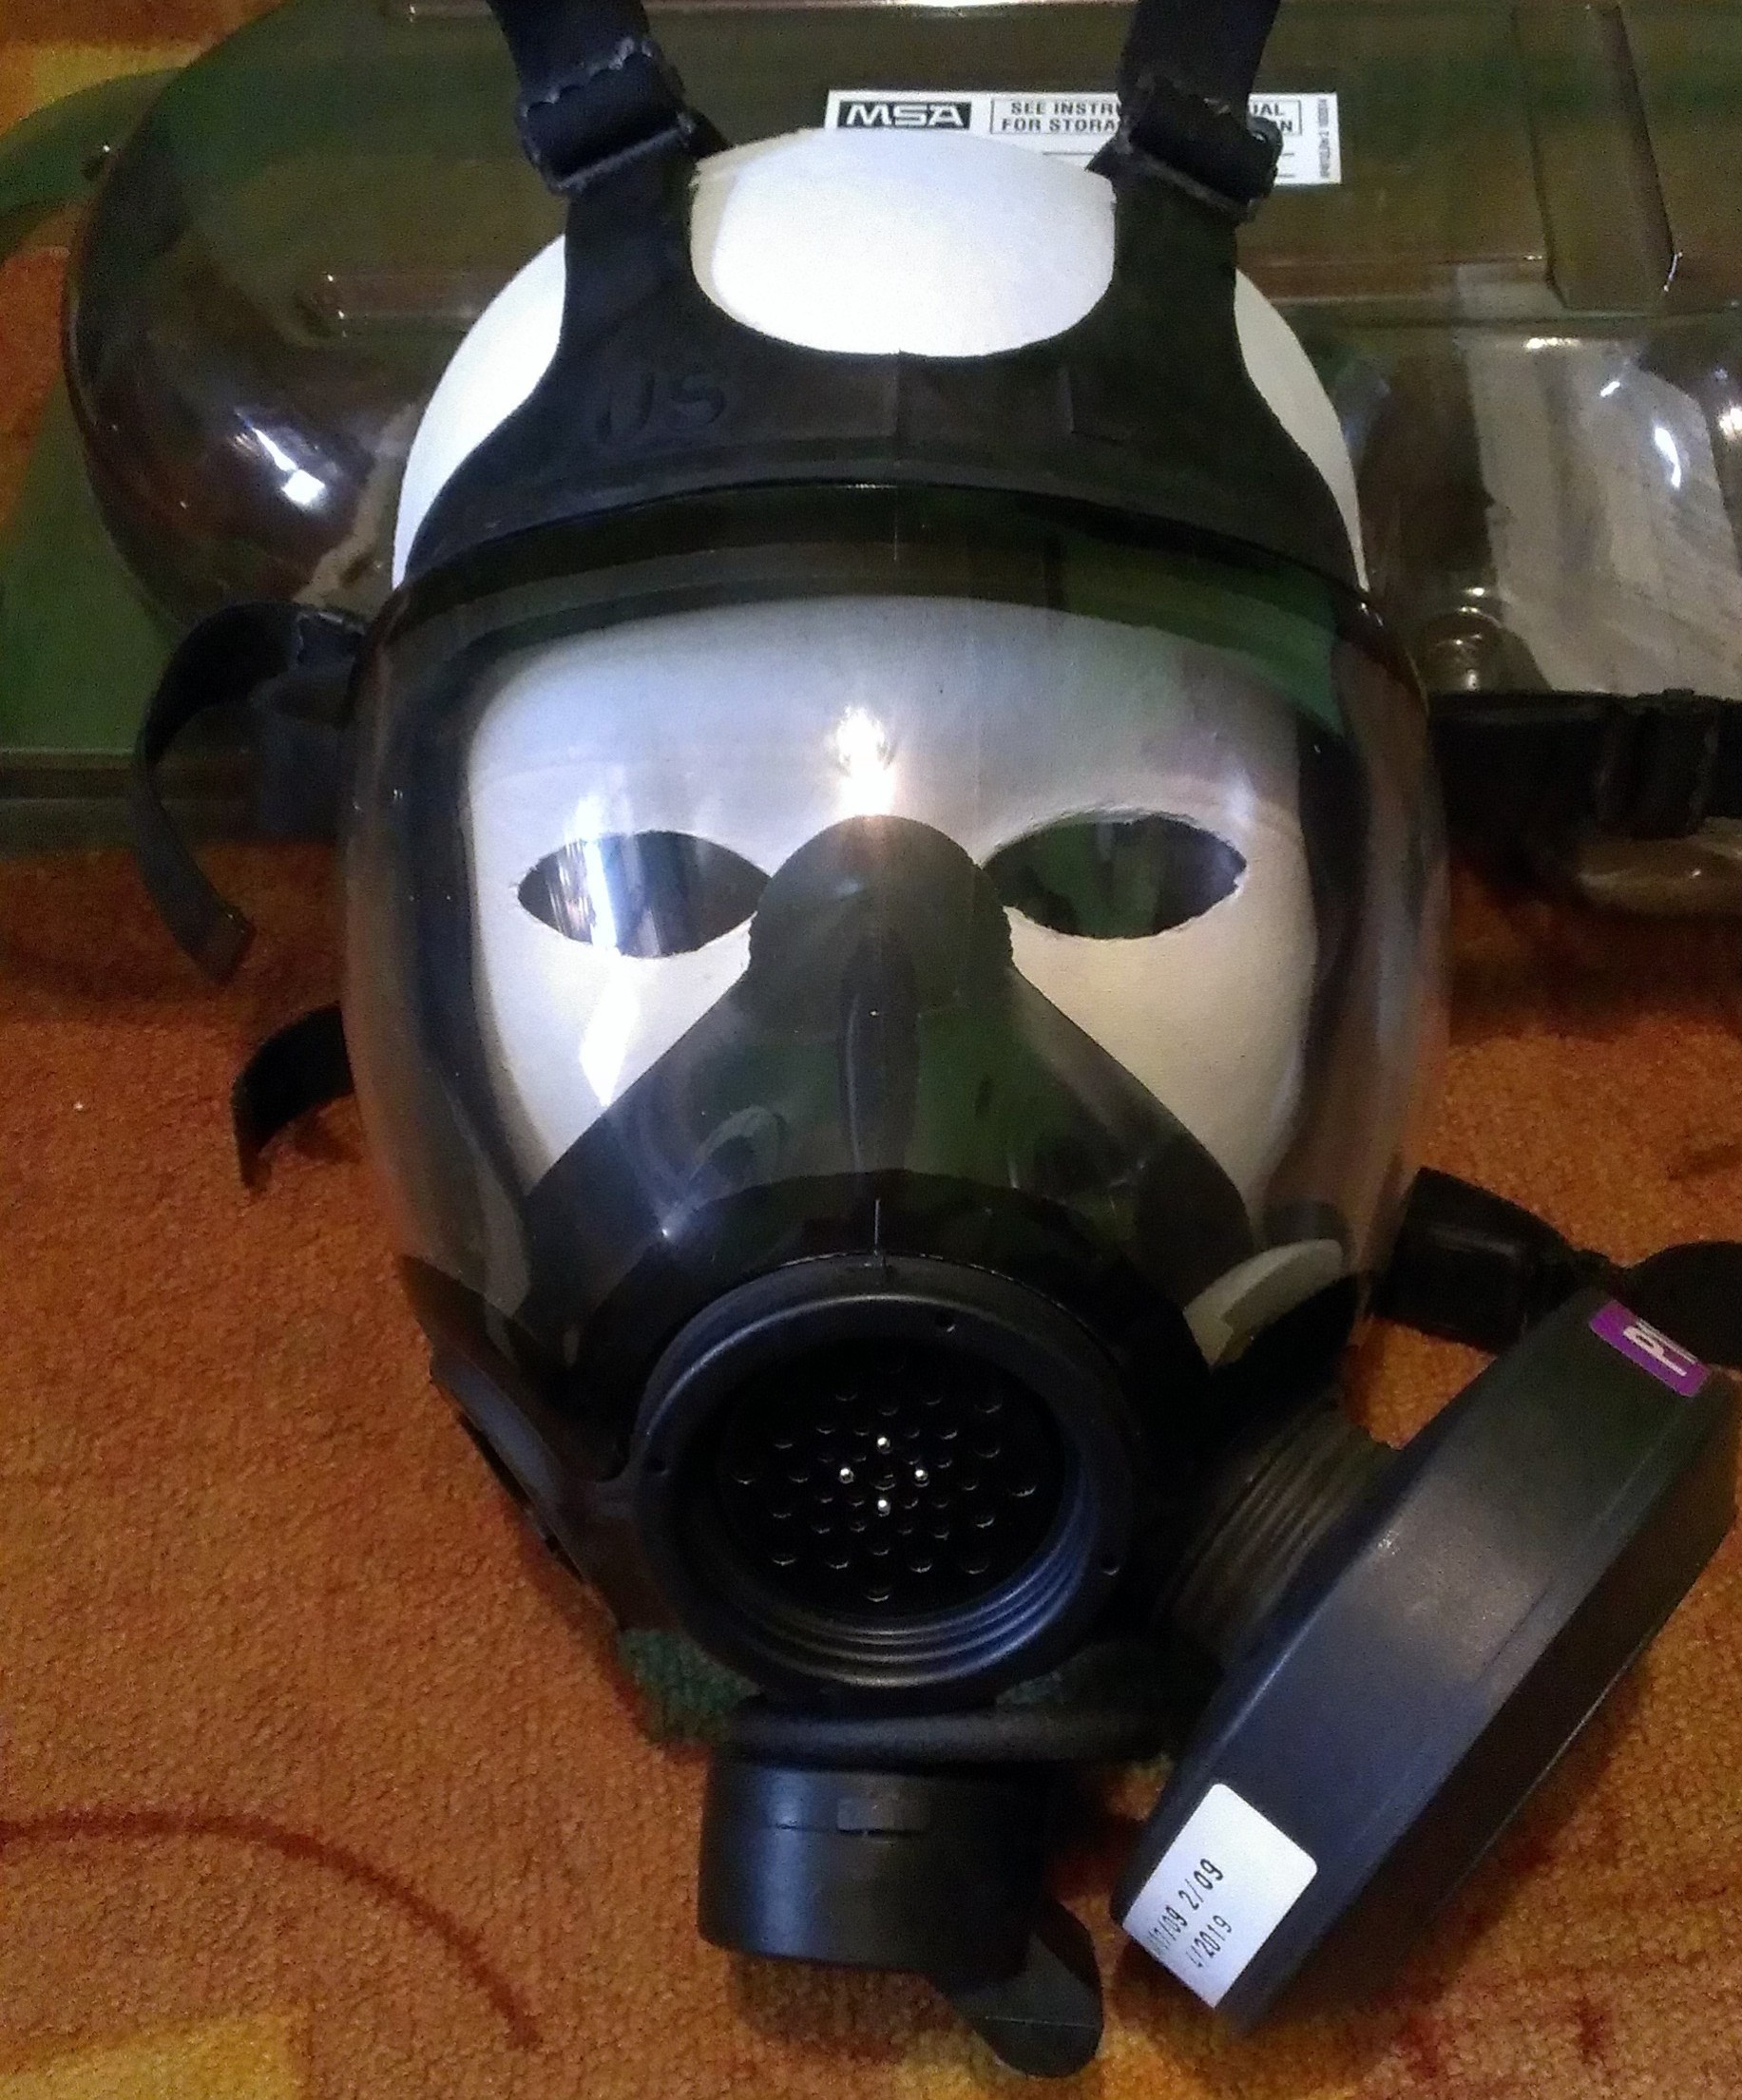 Gas mask - Wikipedia